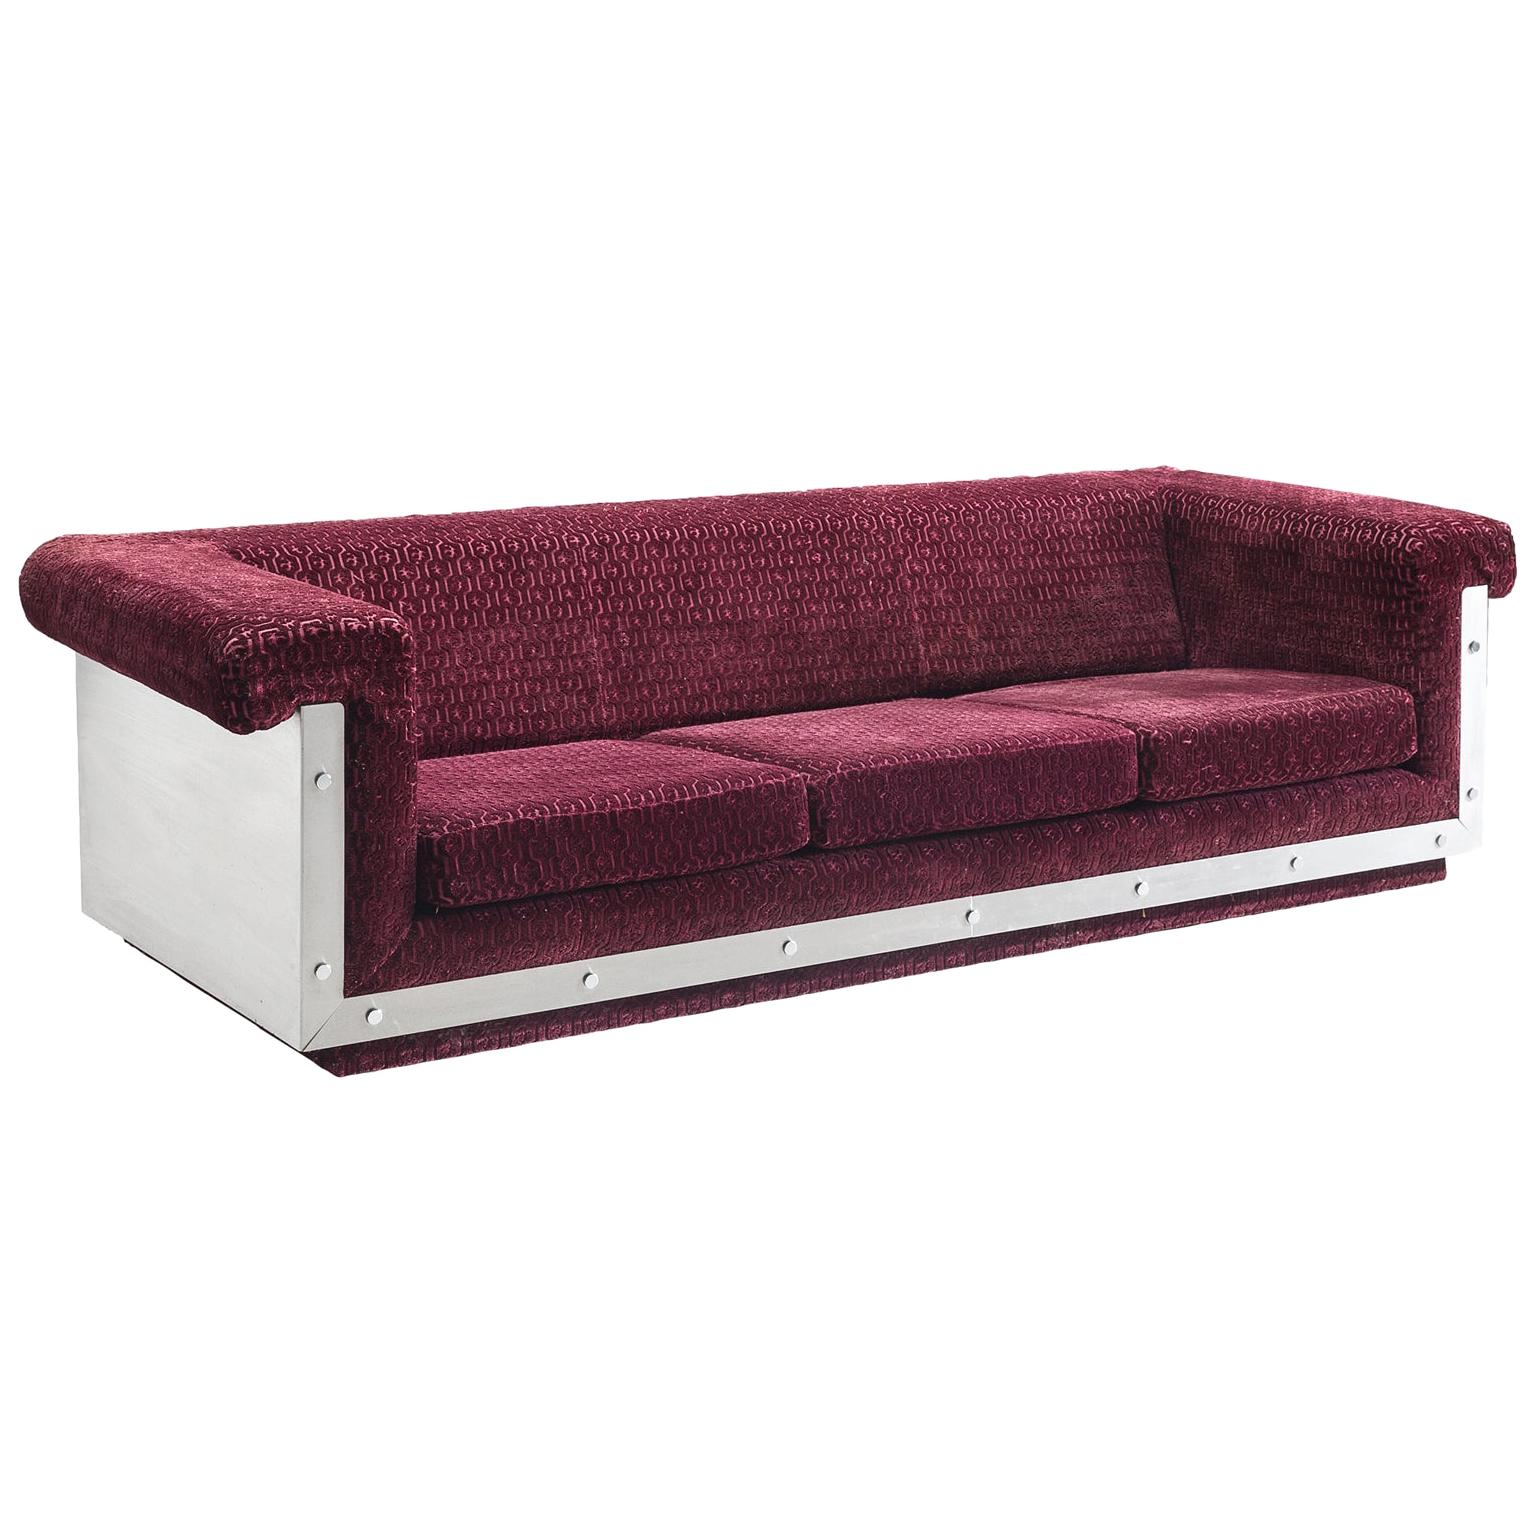 French Sofa in Stainless Steel and Burgundy Velvet Upholstery